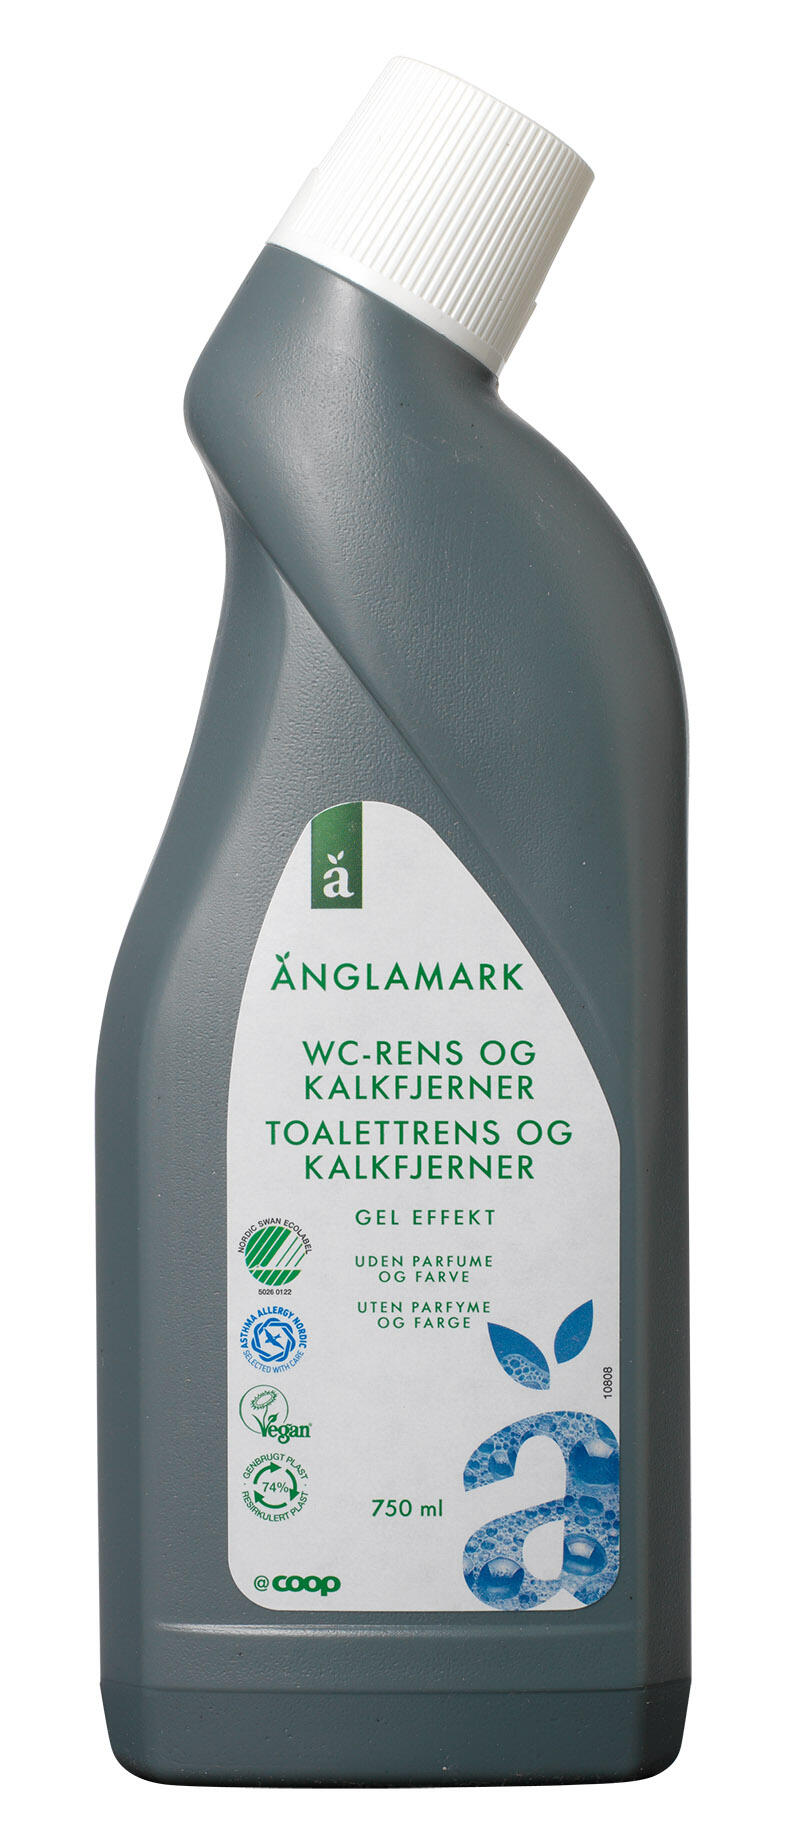 wc-rens og kalkfjerner Änglamark